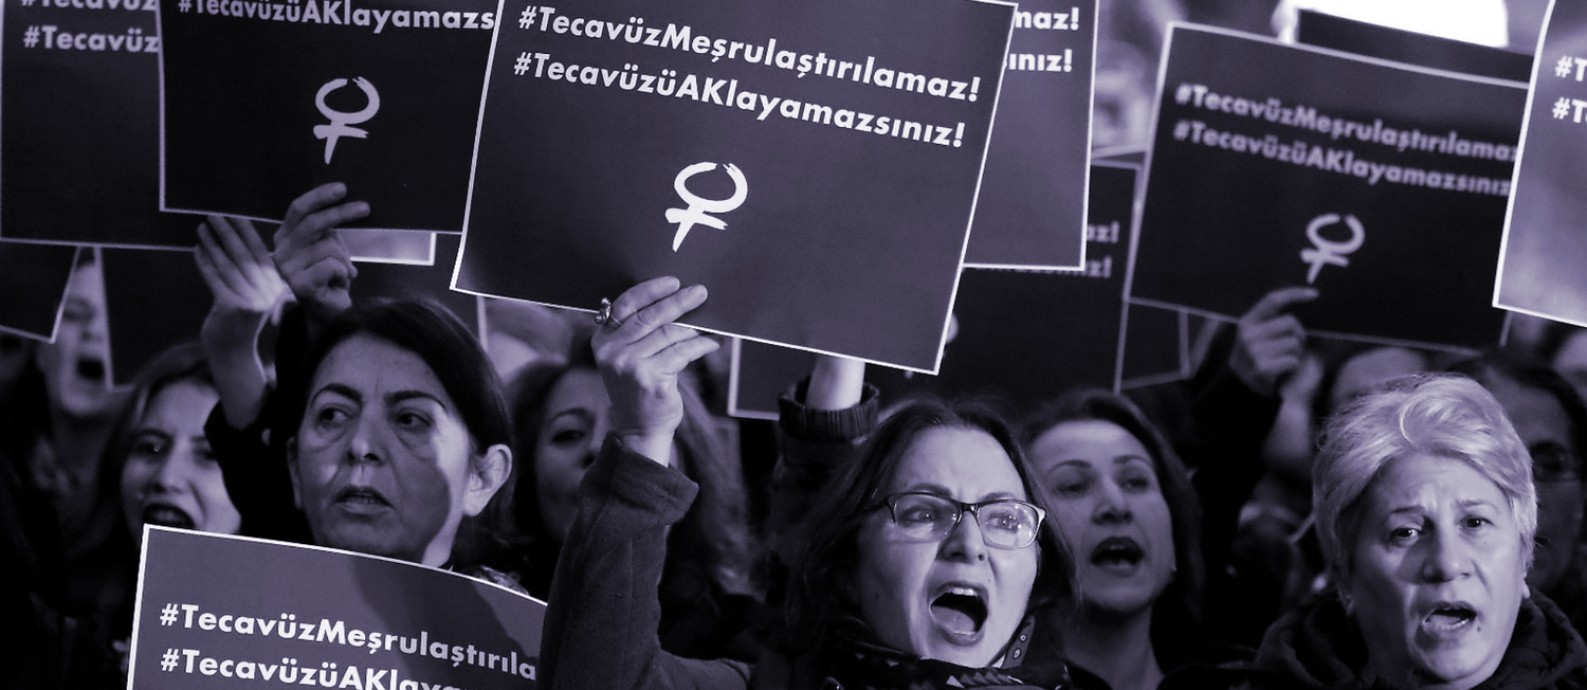 'O estupro não pode ser legalizado': o grito das mulheres da Turquia contra projeto de lei que propõe anistiar homem que esturprar menor e depois se casar com ela Foto: Reprodução/Independent